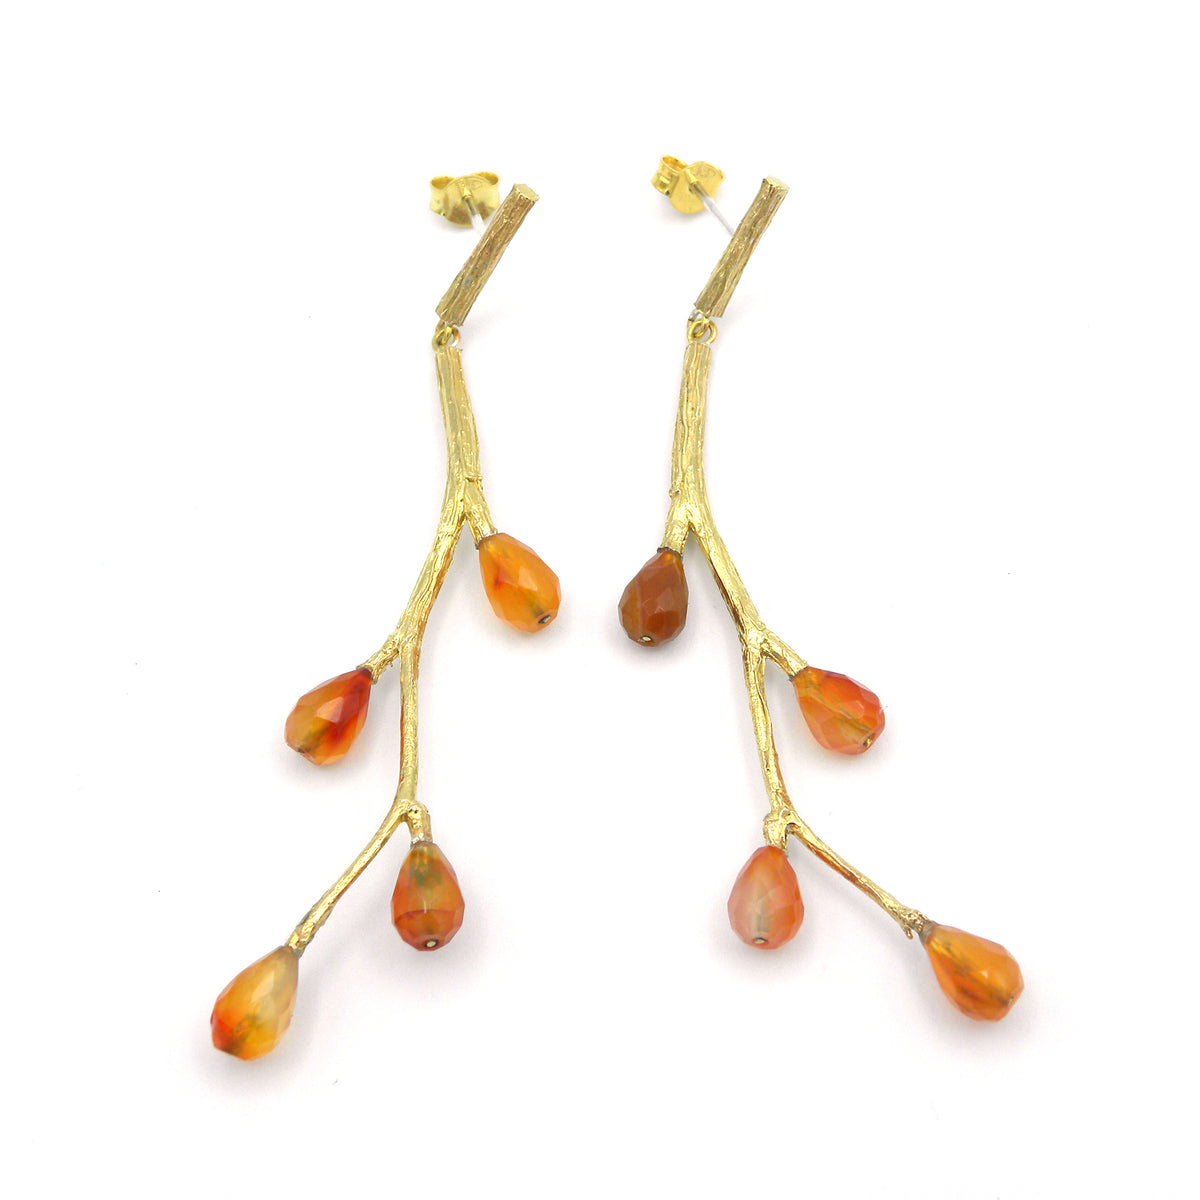 Branch and carnelian earrings